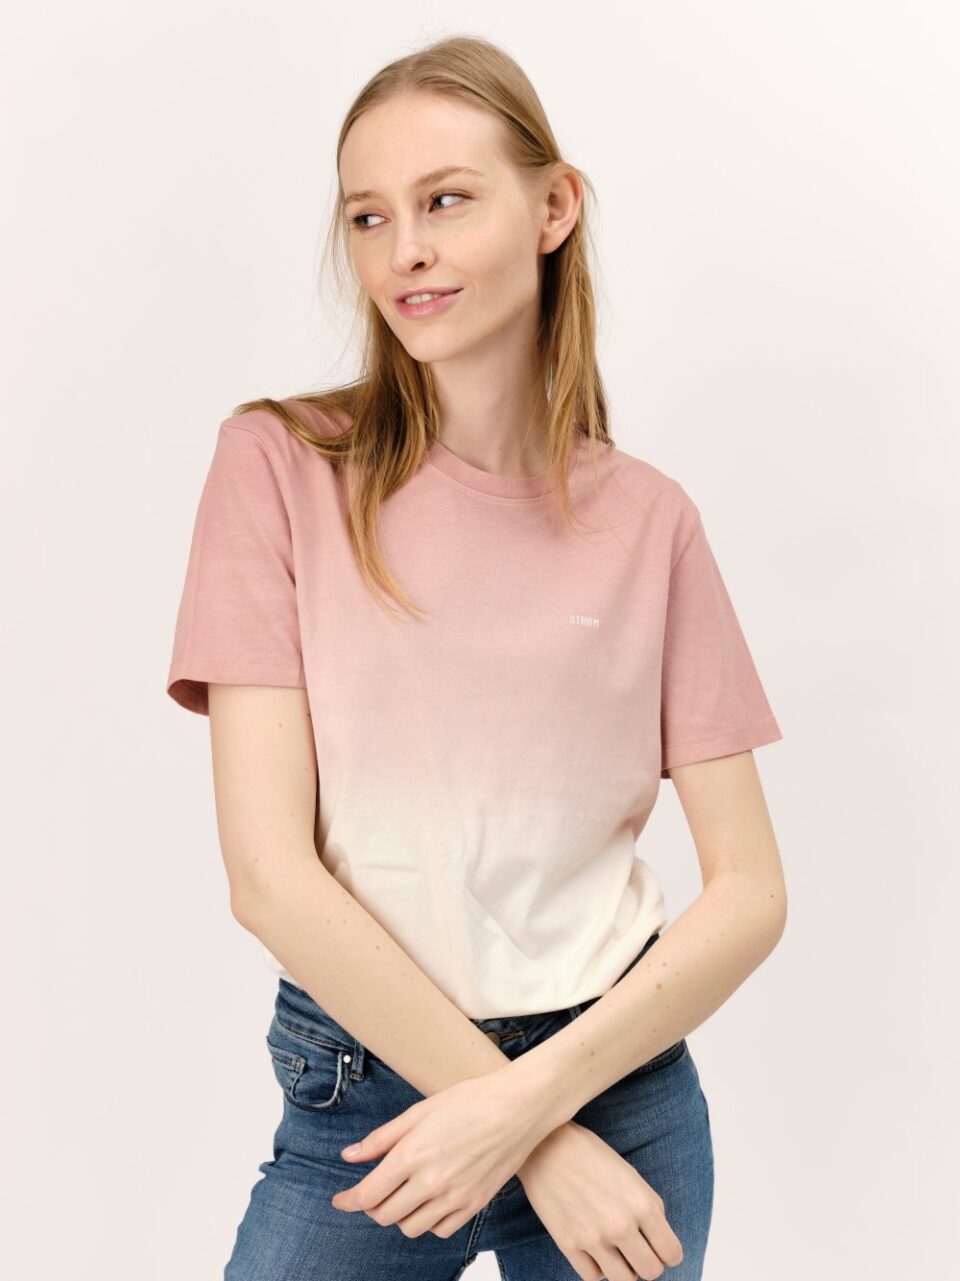 Gradient Pink-STROM-t-shirt